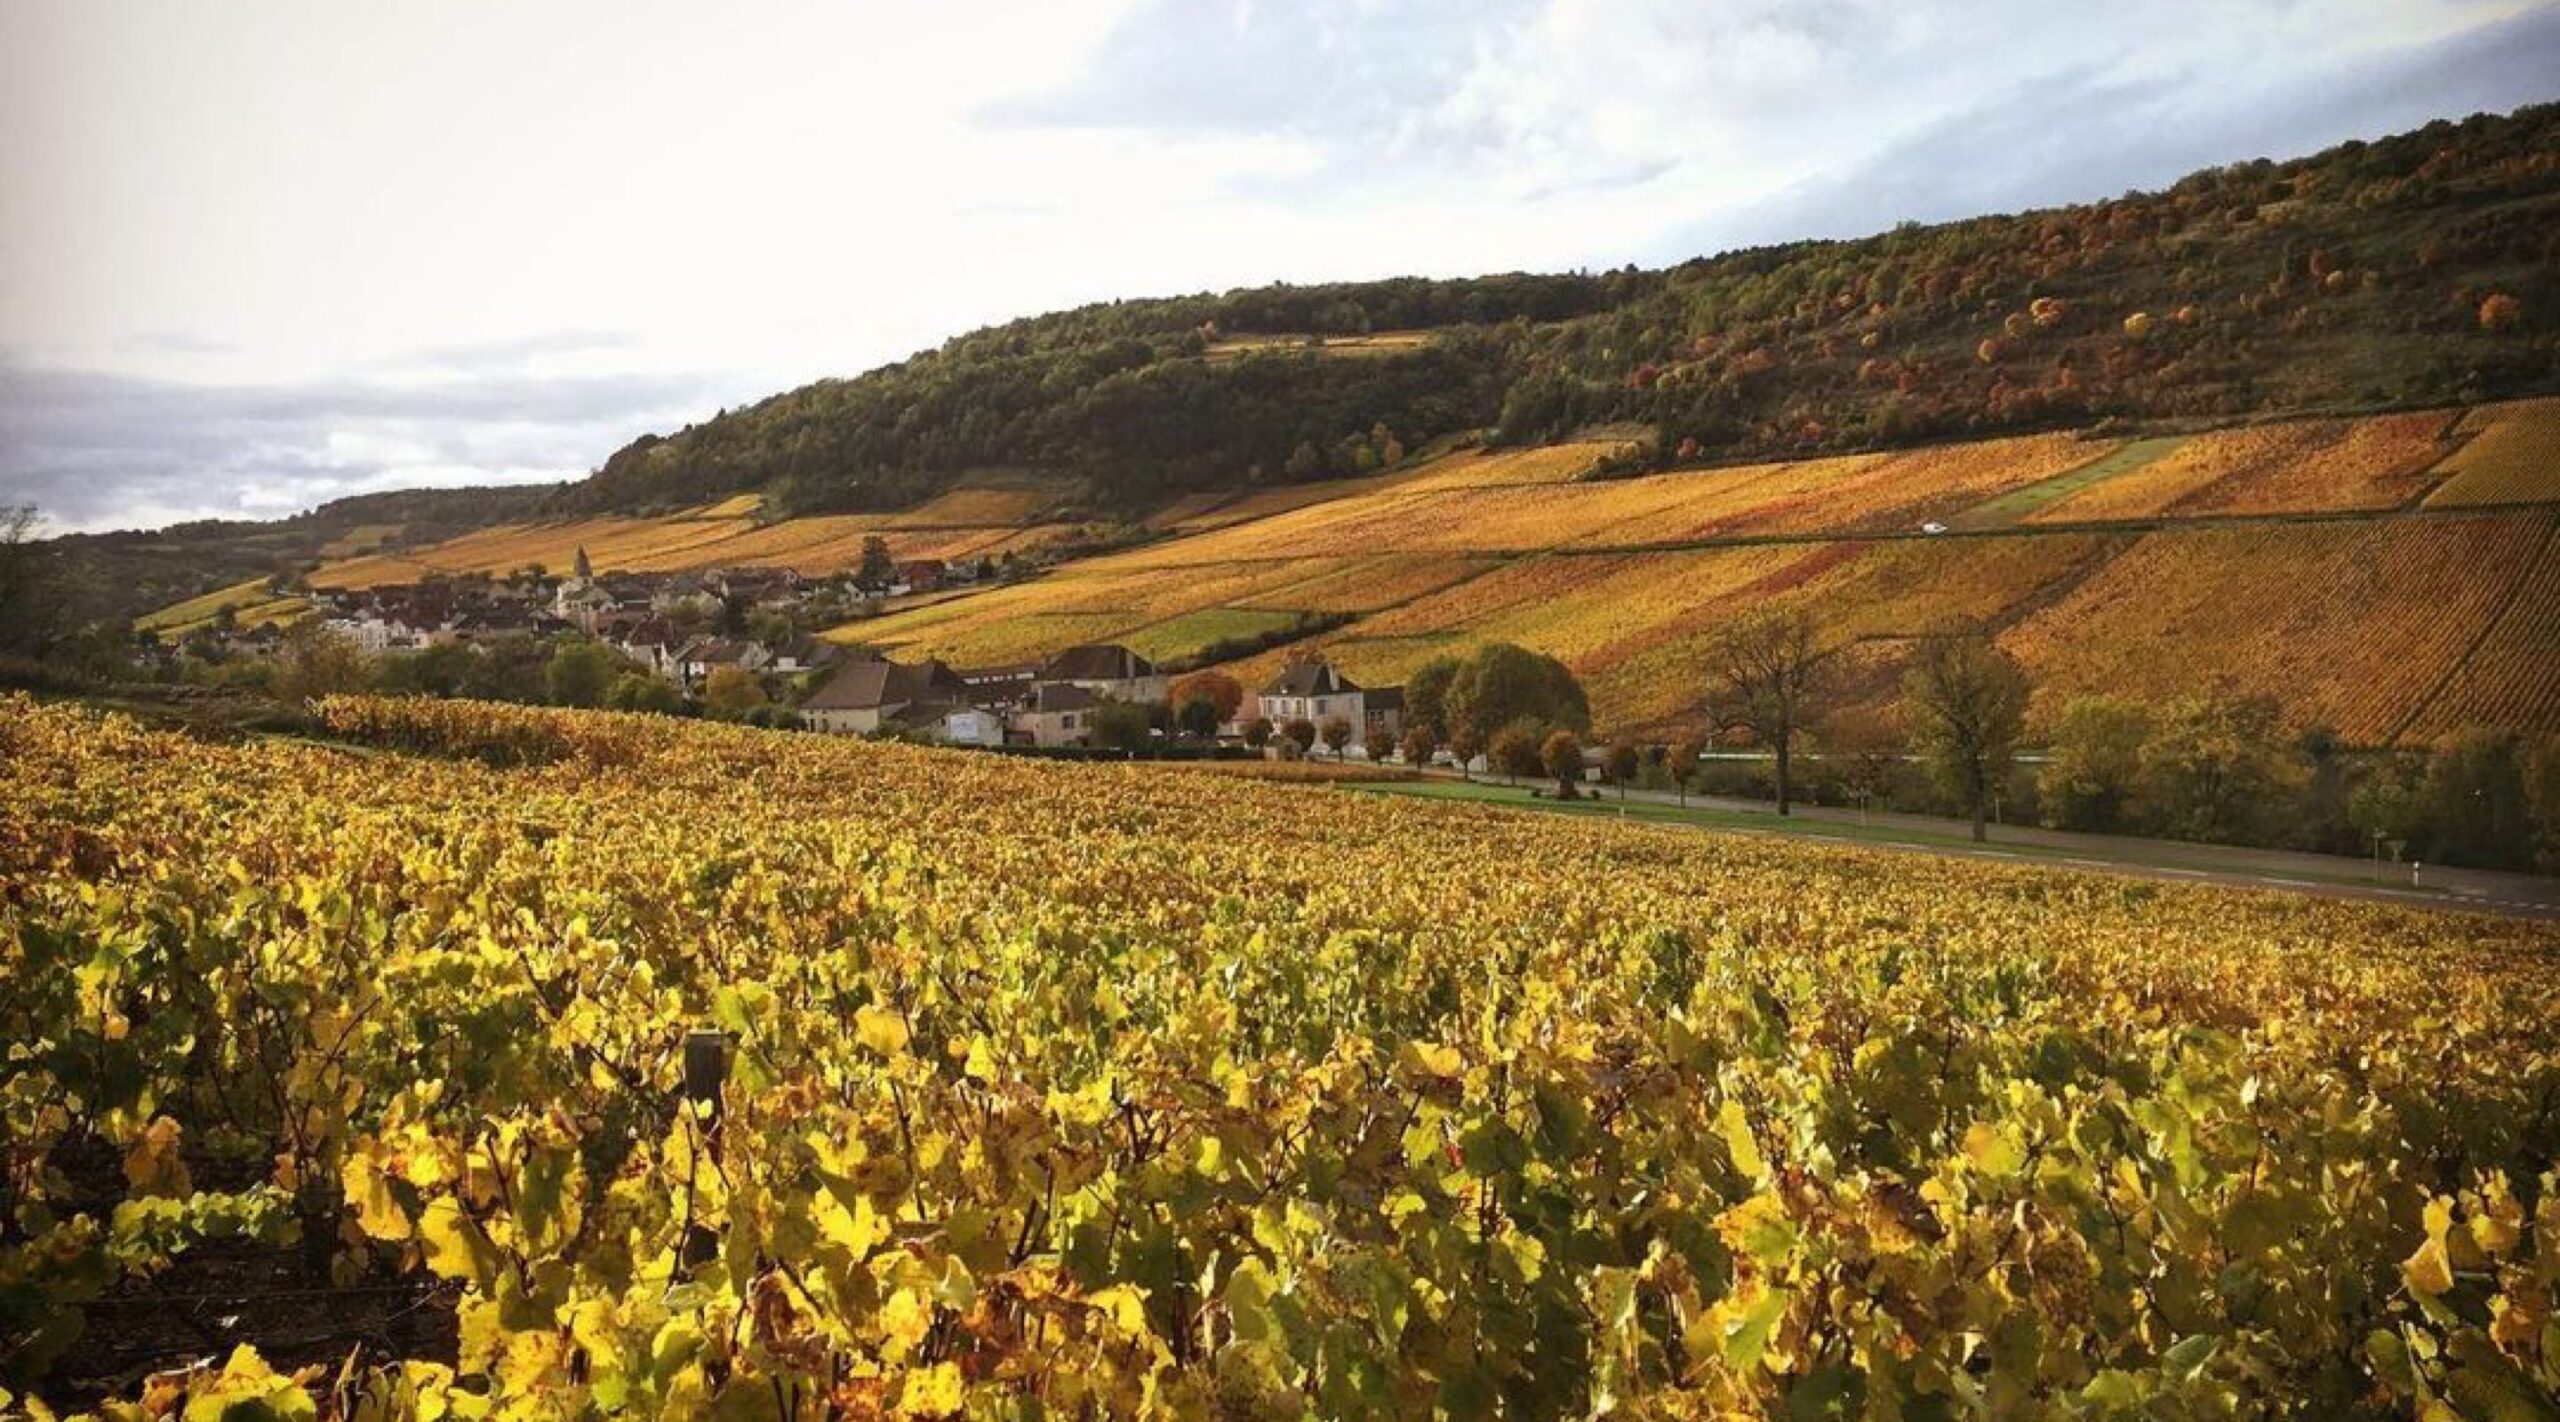 Domaine Henry Prudhon vineyard